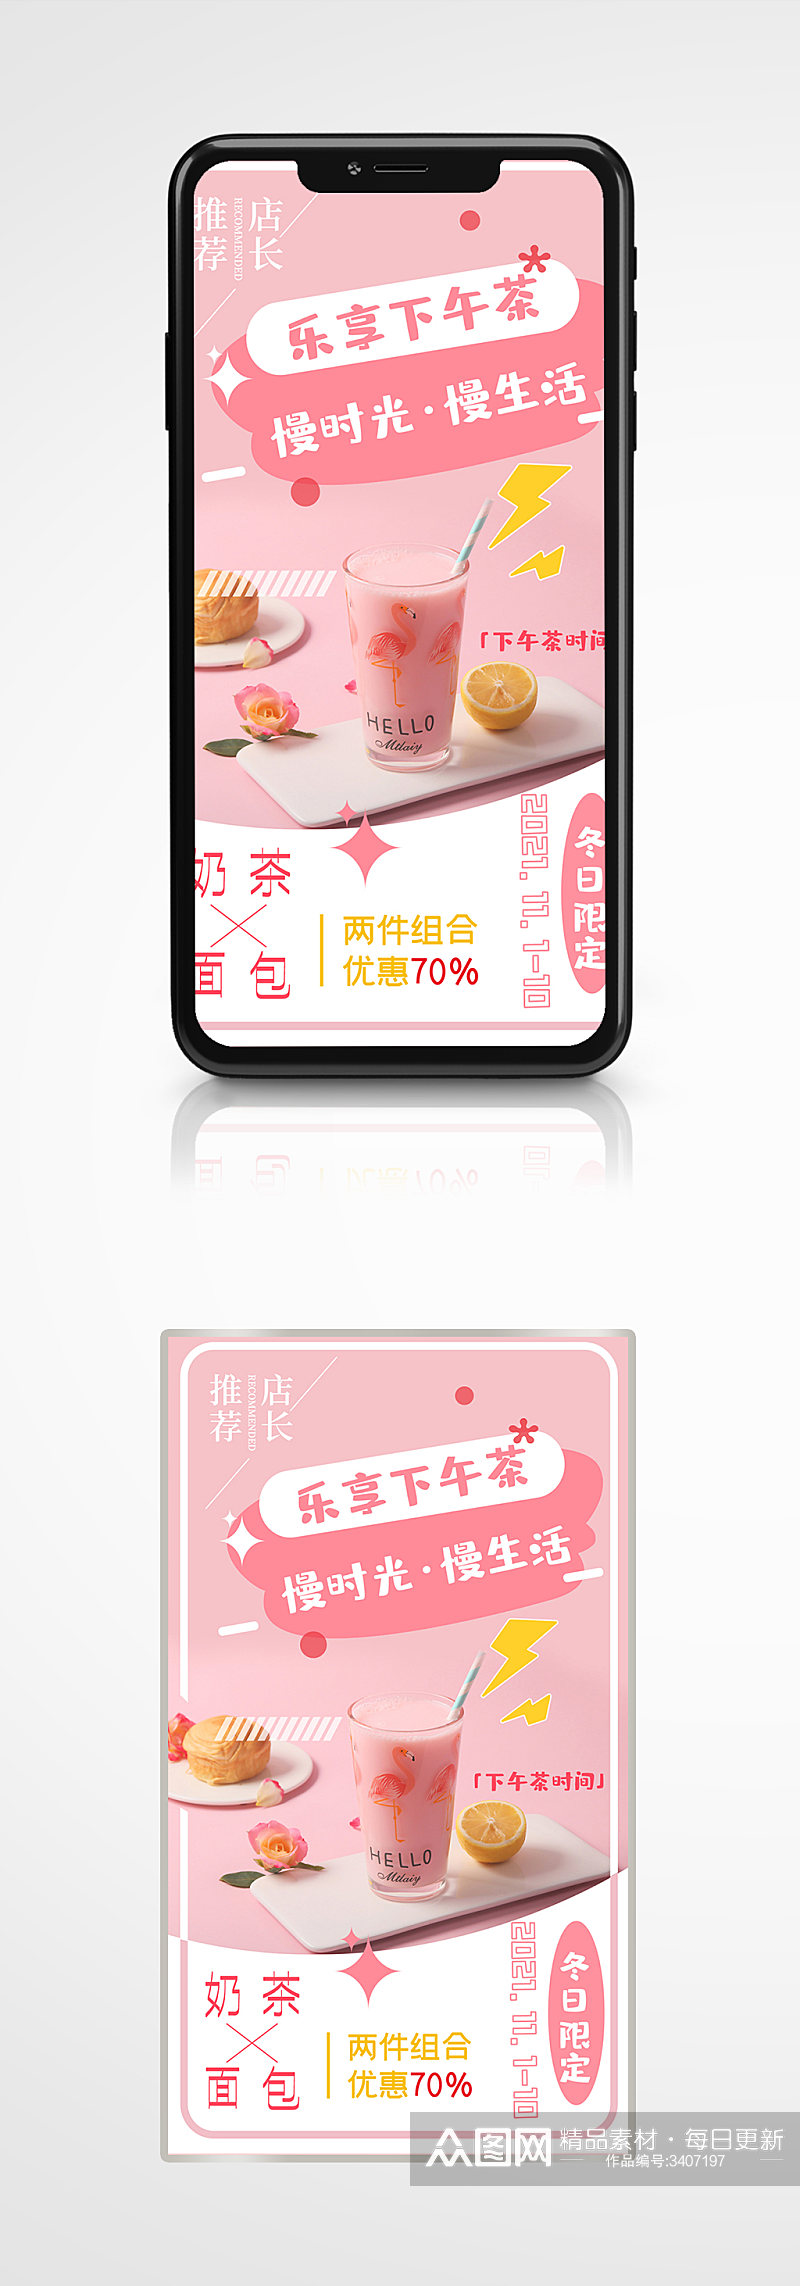 奶茶面包甜品促销粉红色创意手机海报烘焙素材